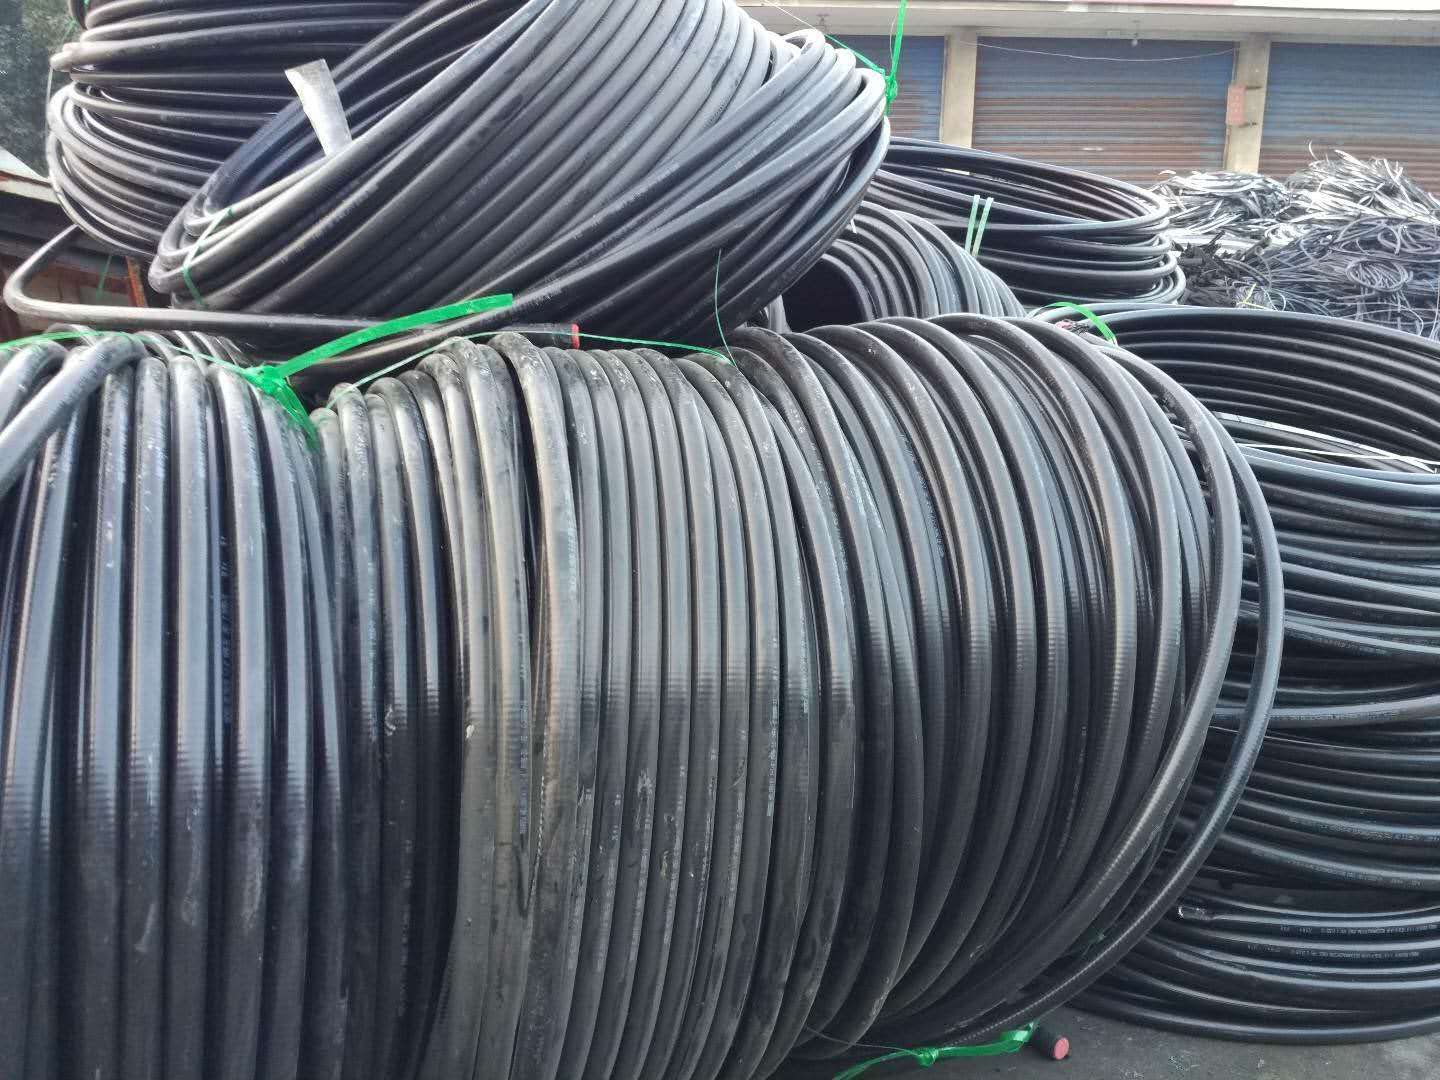 安徽池州电缆线回收利用公司-欢迎访问